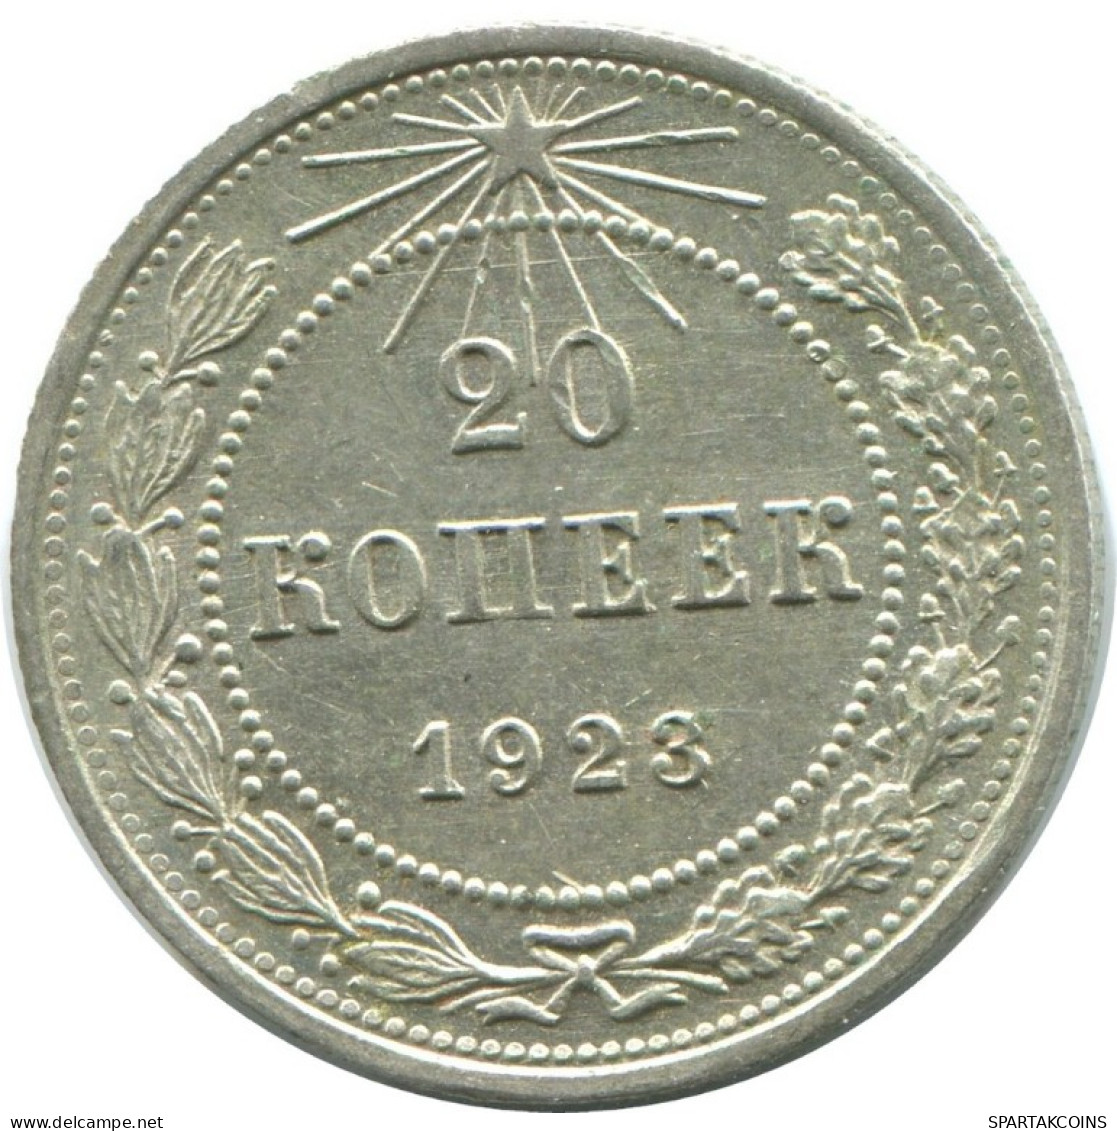 20 KOPEKS 1923 RUSSLAND RUSSIA RSFSR SILBER Münze HIGH GRADE #AF711.D.A - Russia